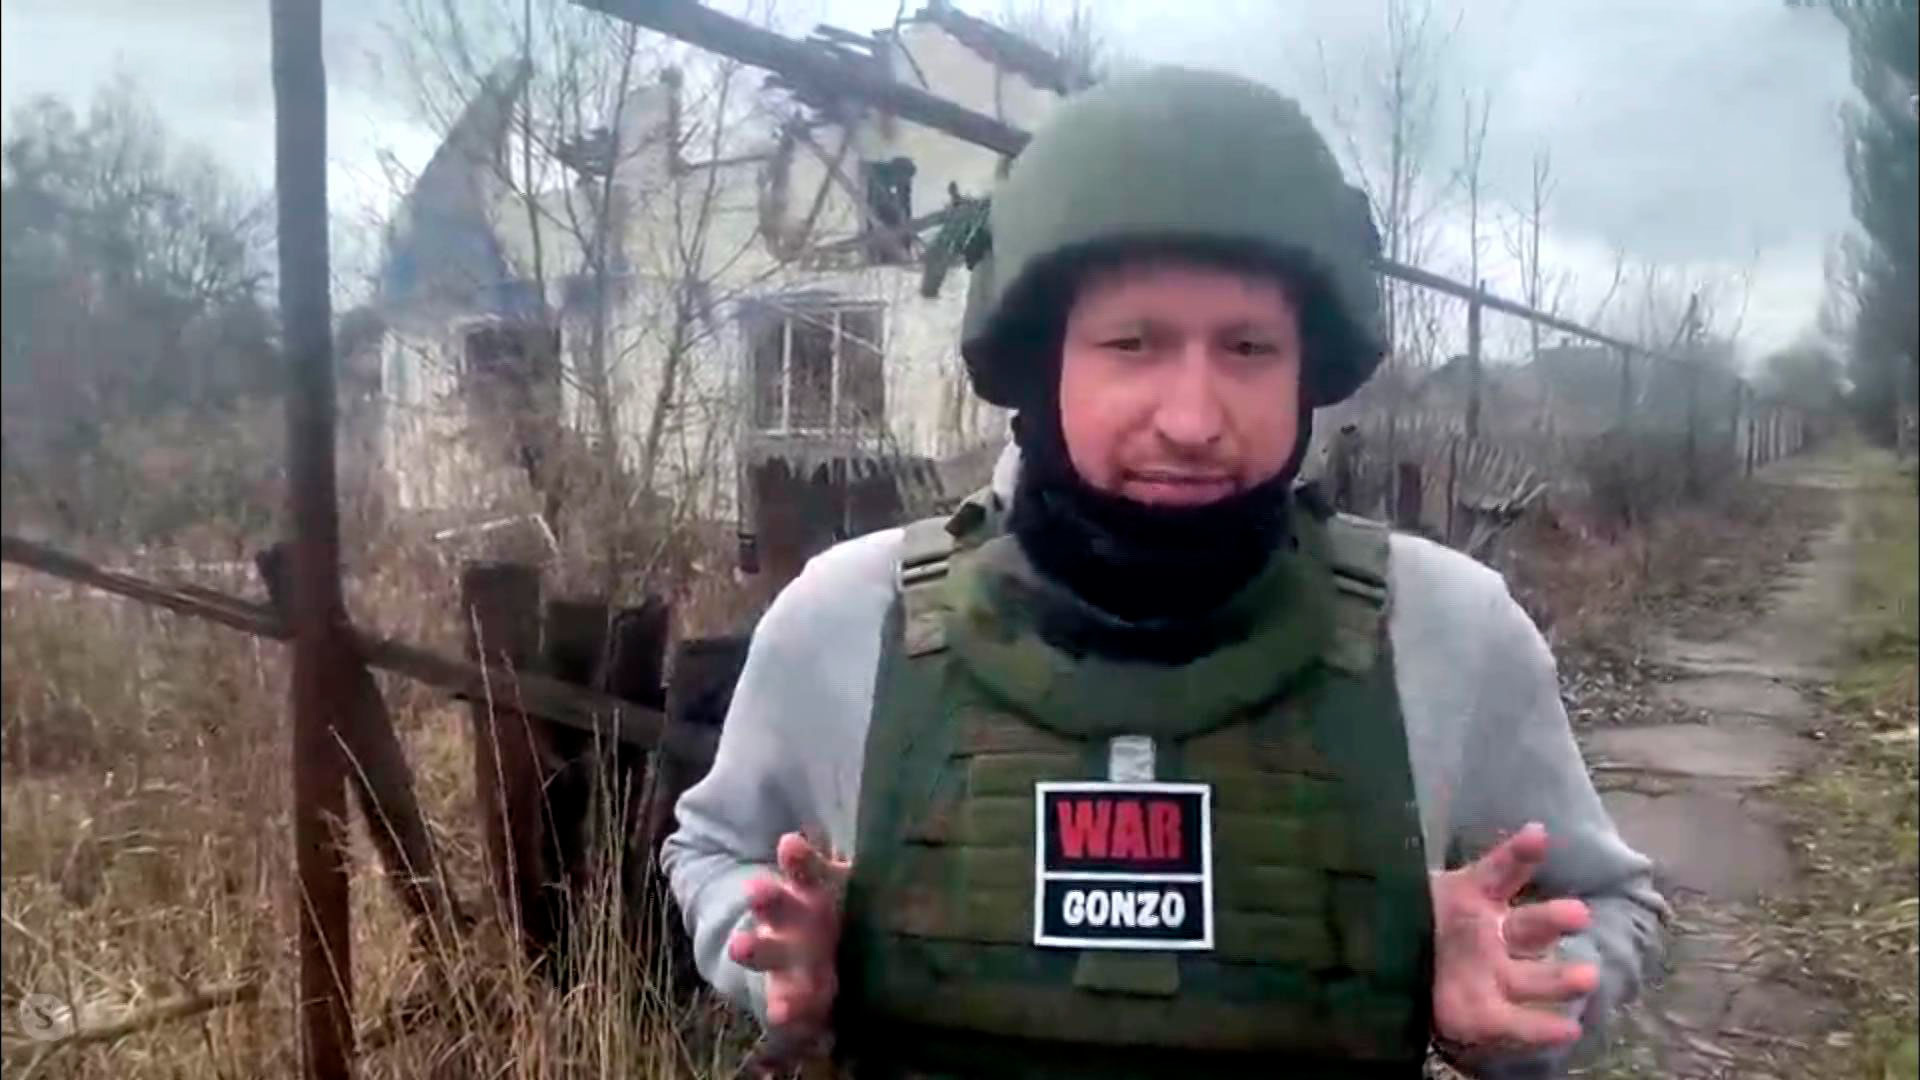 Военные корреспонденты россии на украине фото с фамилиями